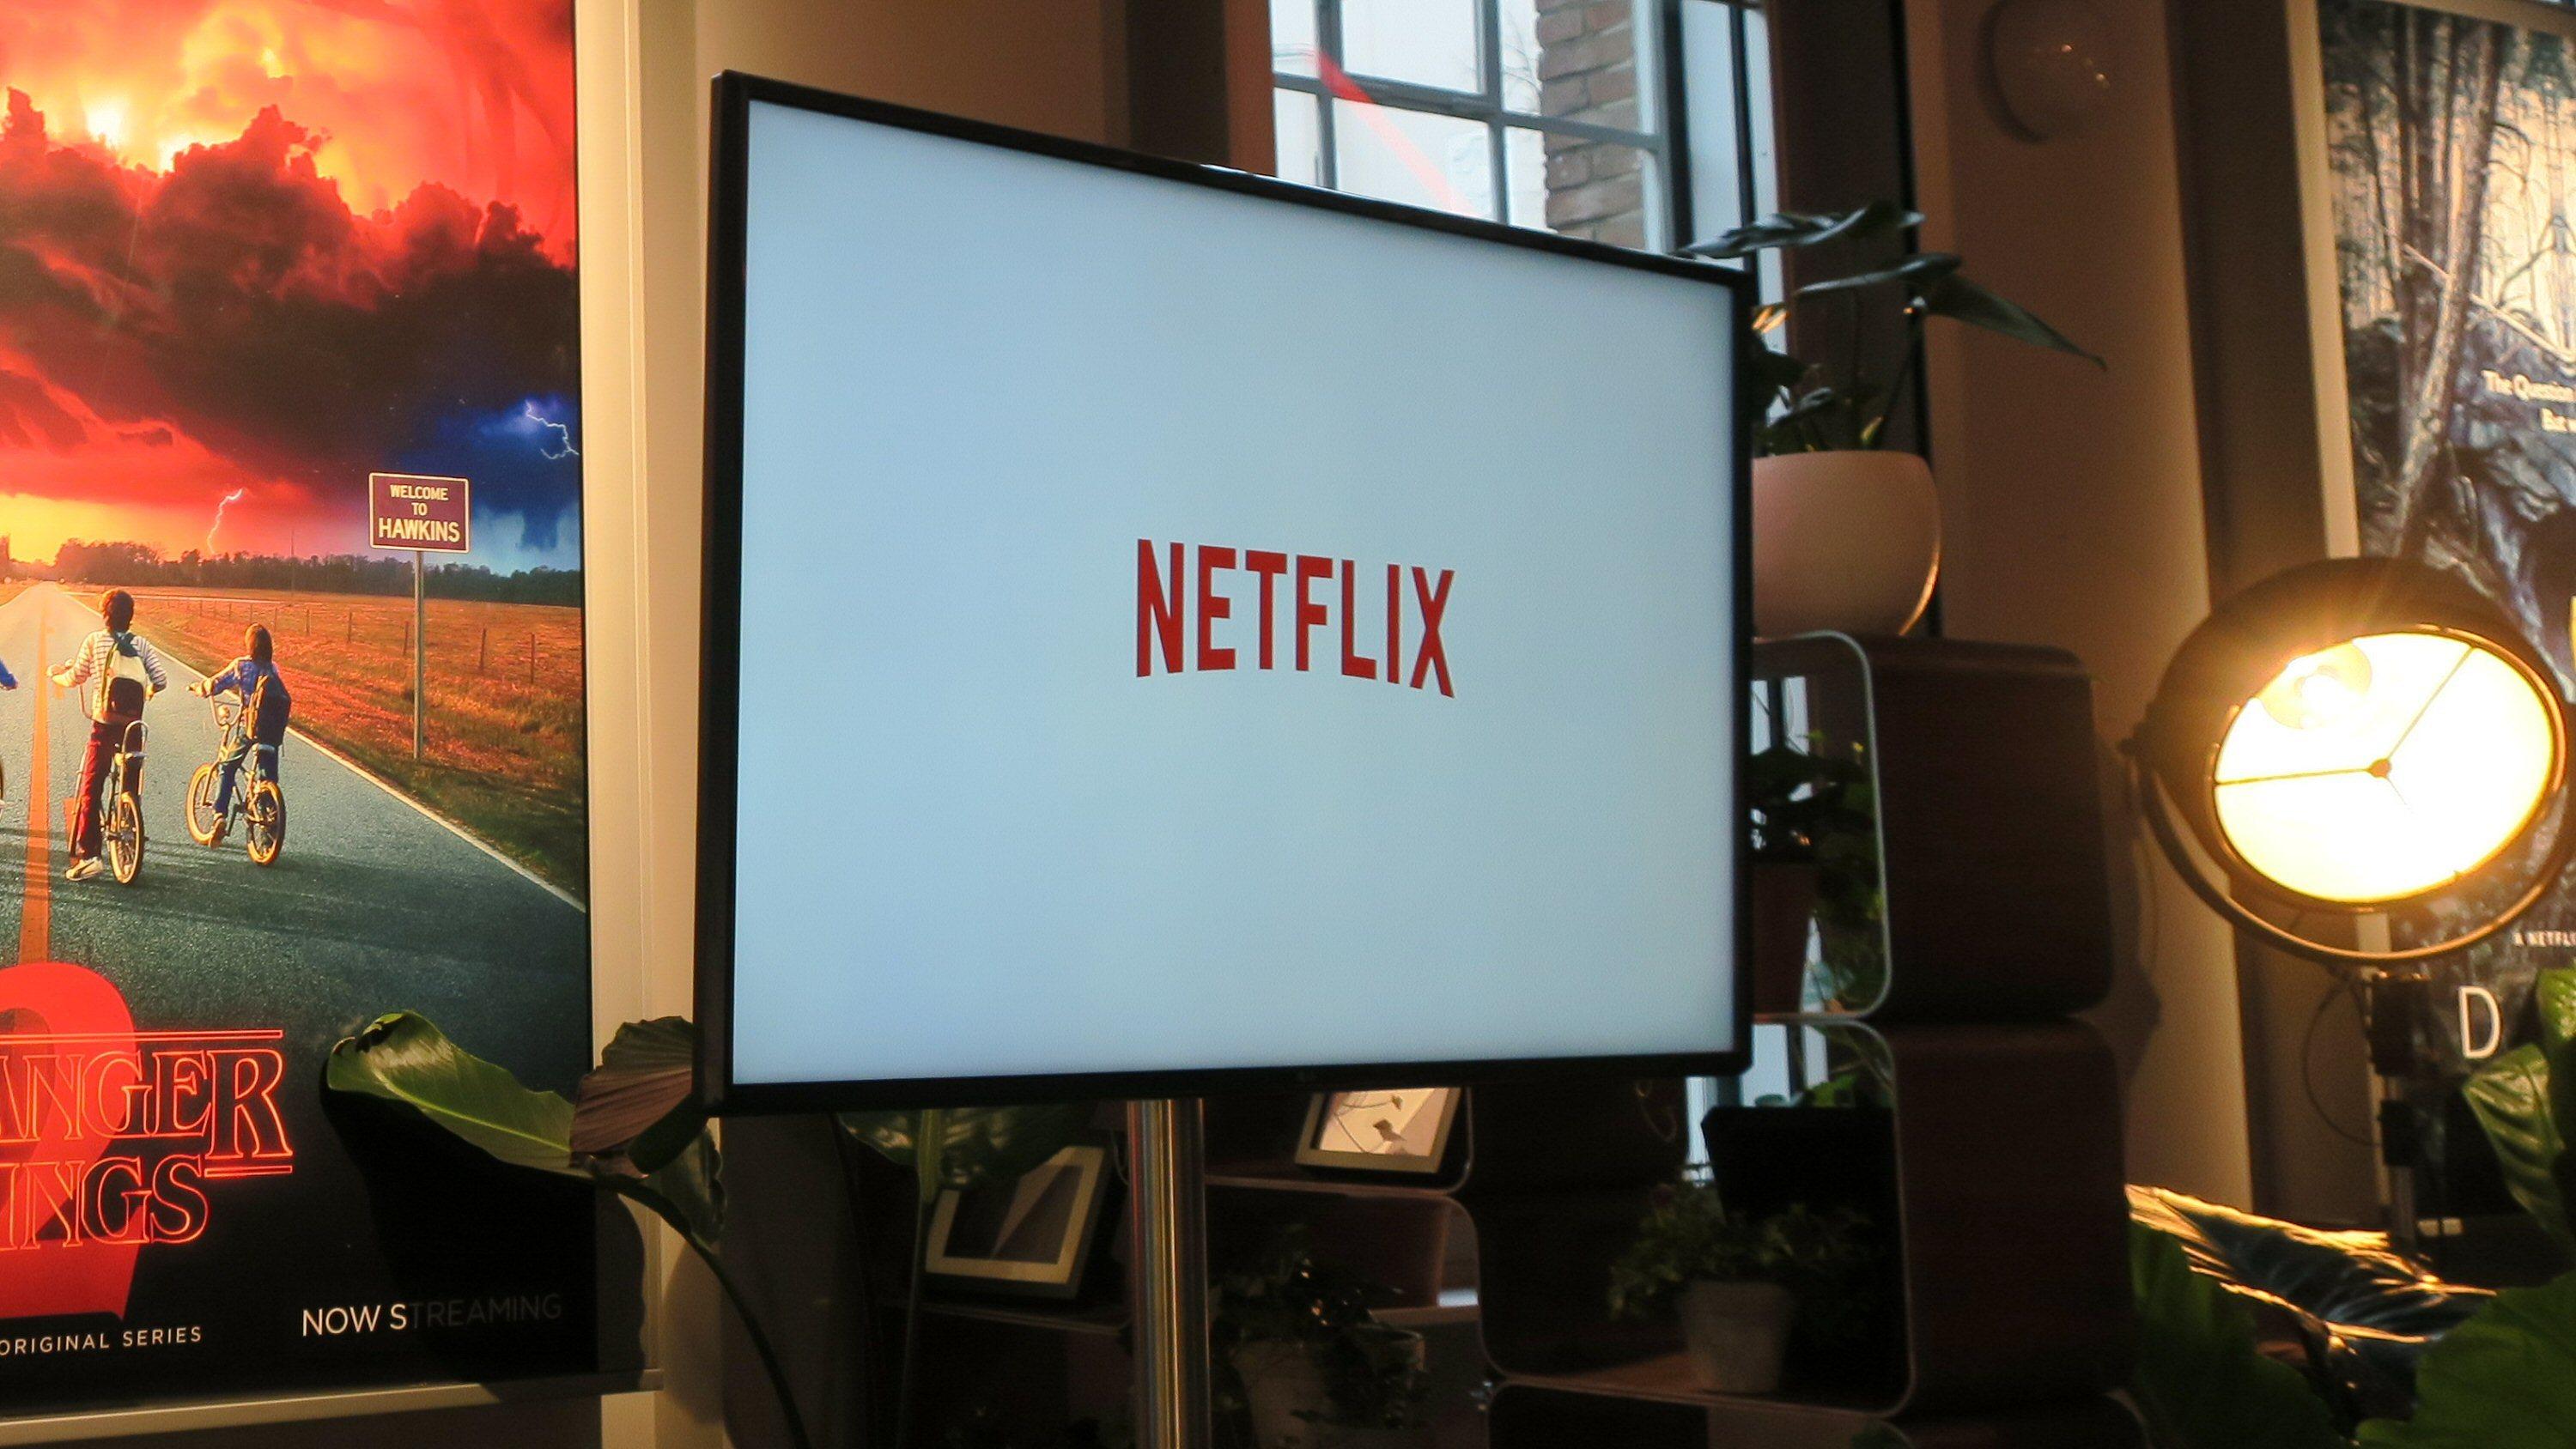 Netflix viser sin egen film på kino først, før den kommer til strømmetjenesten